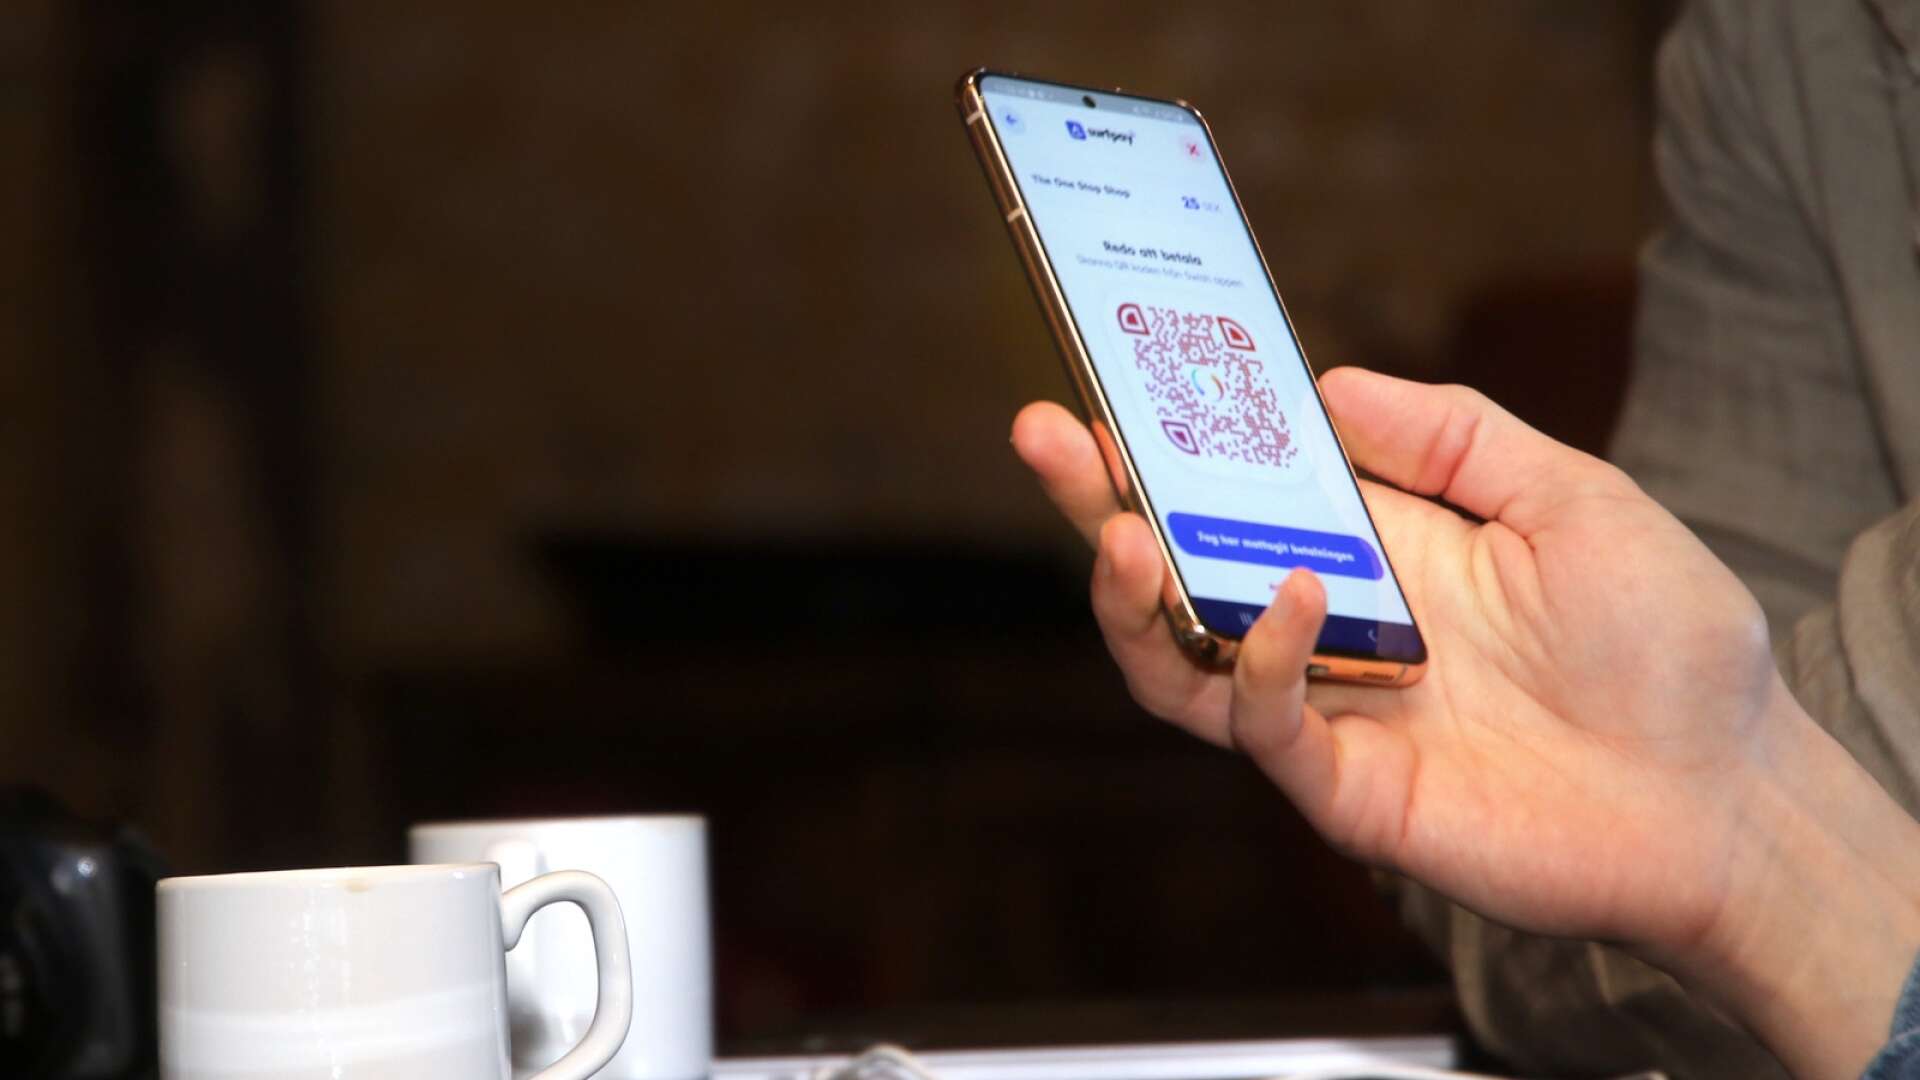 Mobiltelefonen blir snabbt en betalterminal med en app, vilket kan sänka kostnaderna för småföretagare. Det kommer nu att testas i Mariestad den närmaste tiden.